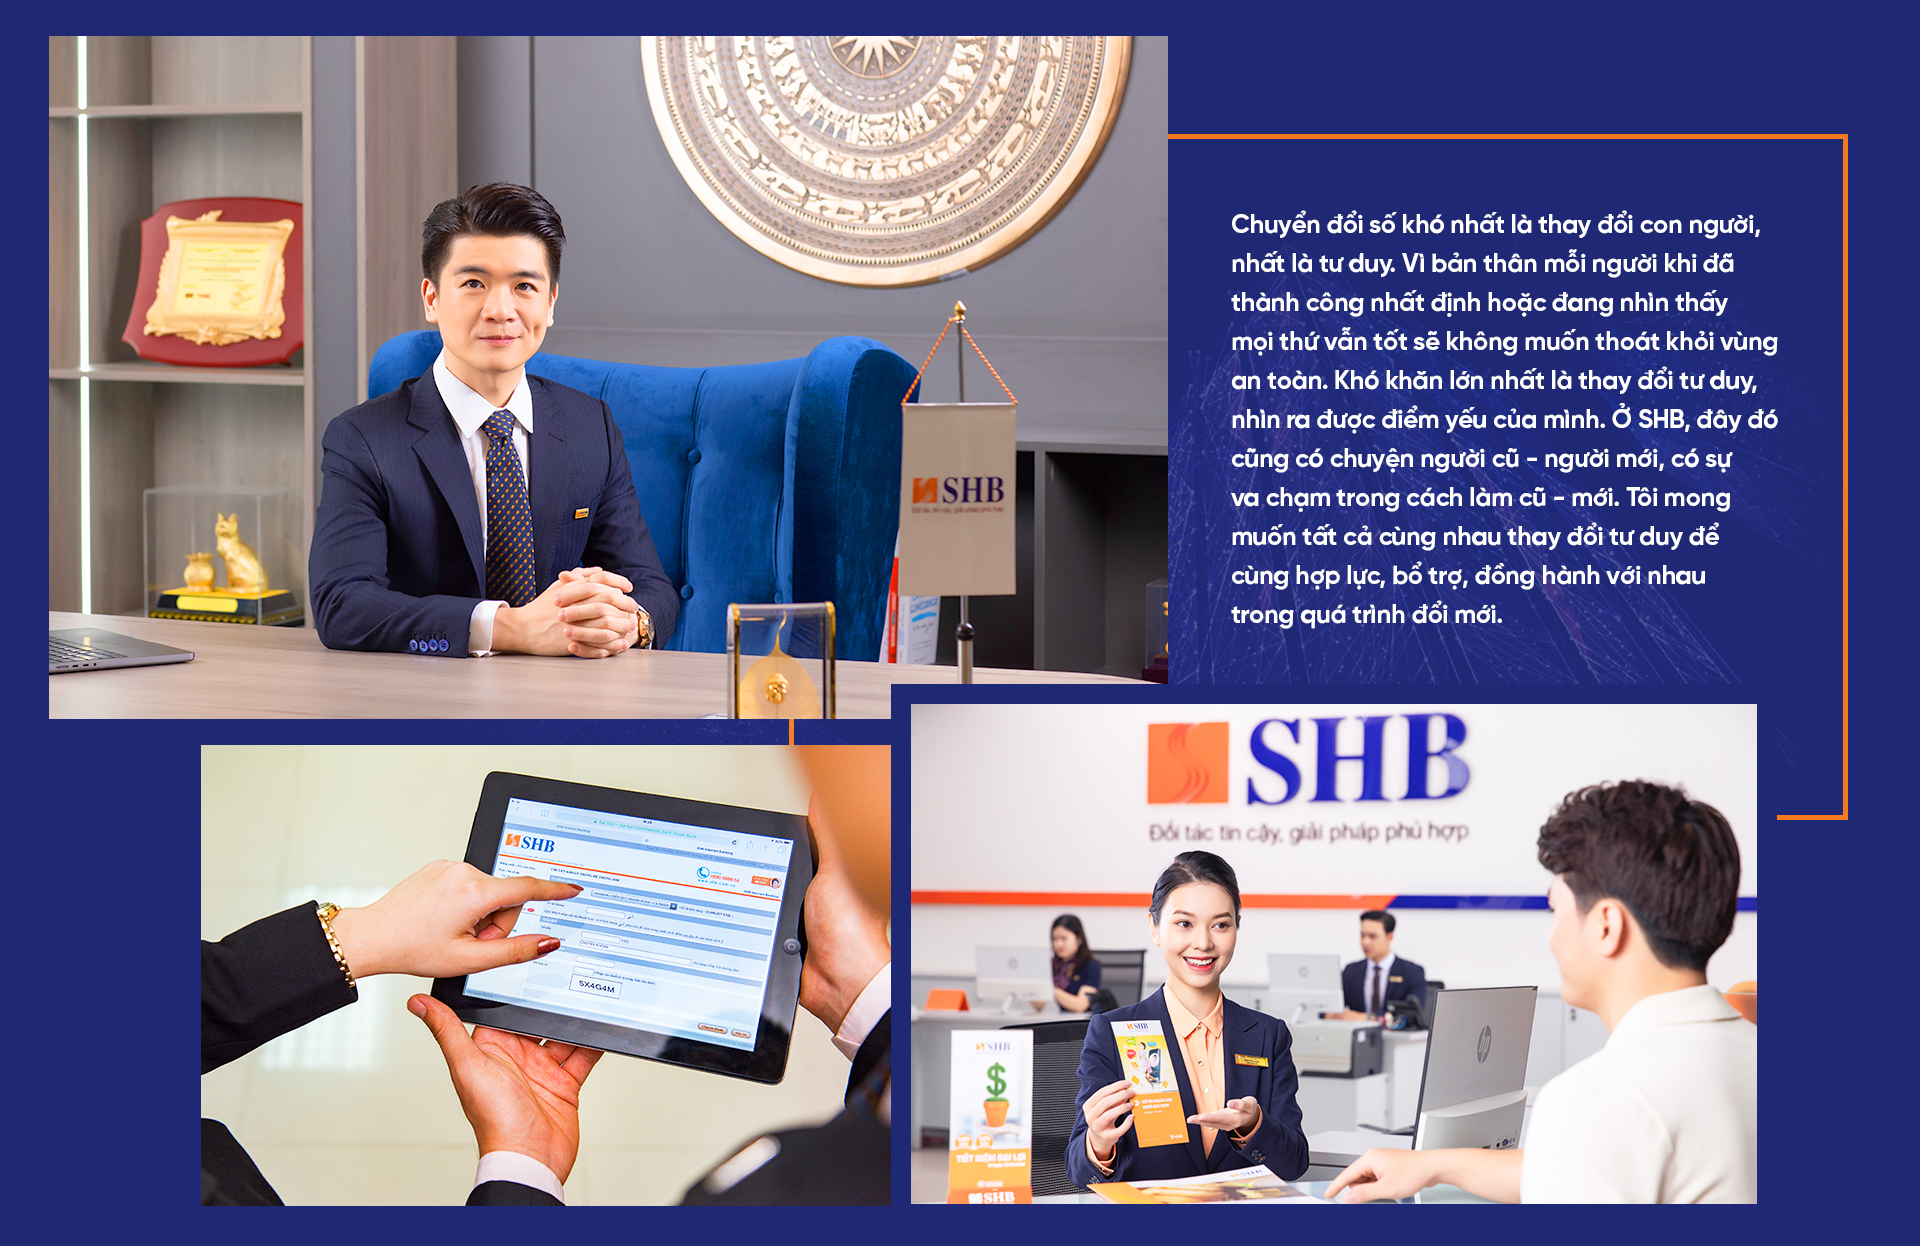 Phó chủ tịch HĐQT Ngân hàng SHB Đỗ Quang Vinh: Luôn sẵn sàng với những thử thách mới - Ảnh 6.